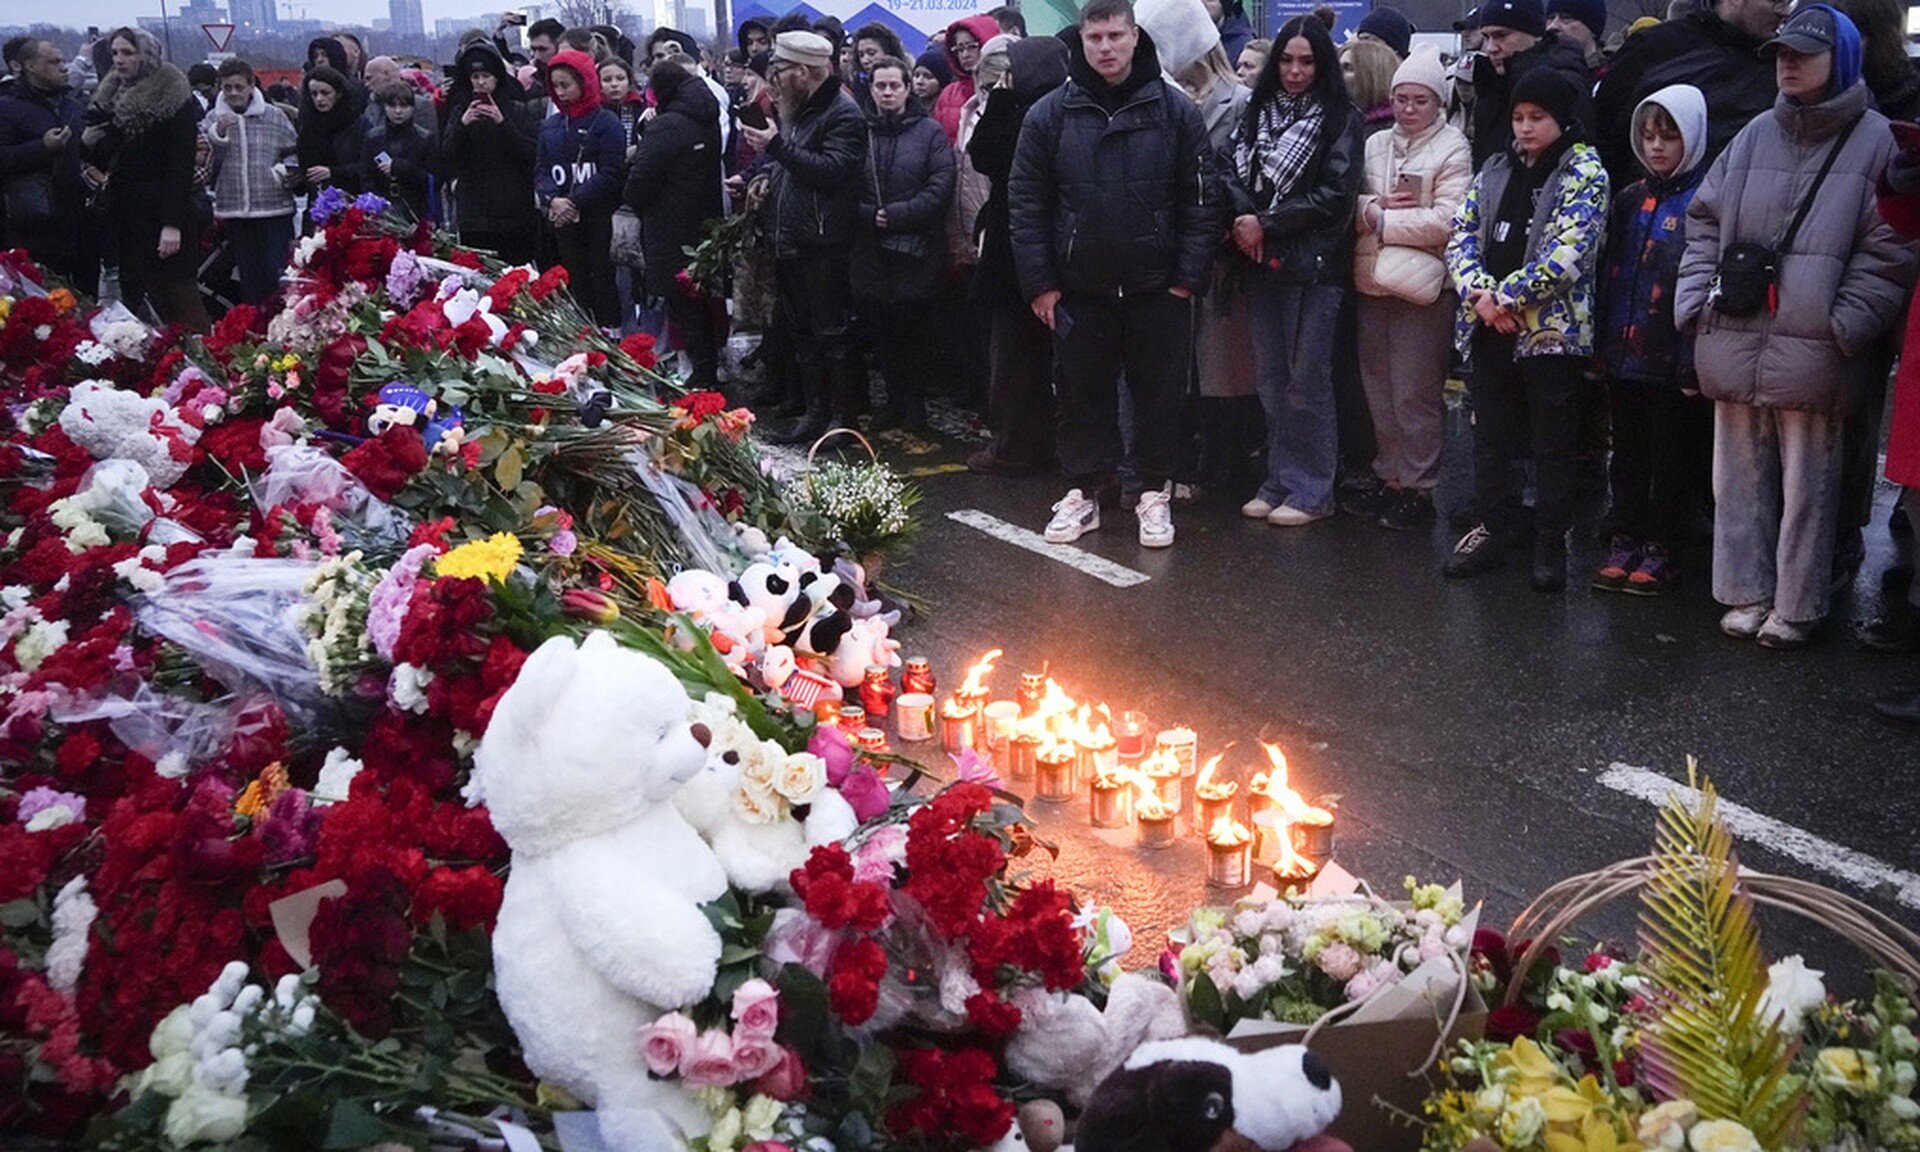 Ρωσία: Στους 137 οι νεκροί της αιματηρής επίθεσης στο συναυλιακό χώρο - Ανάμεσά τους 3 παιδιά 